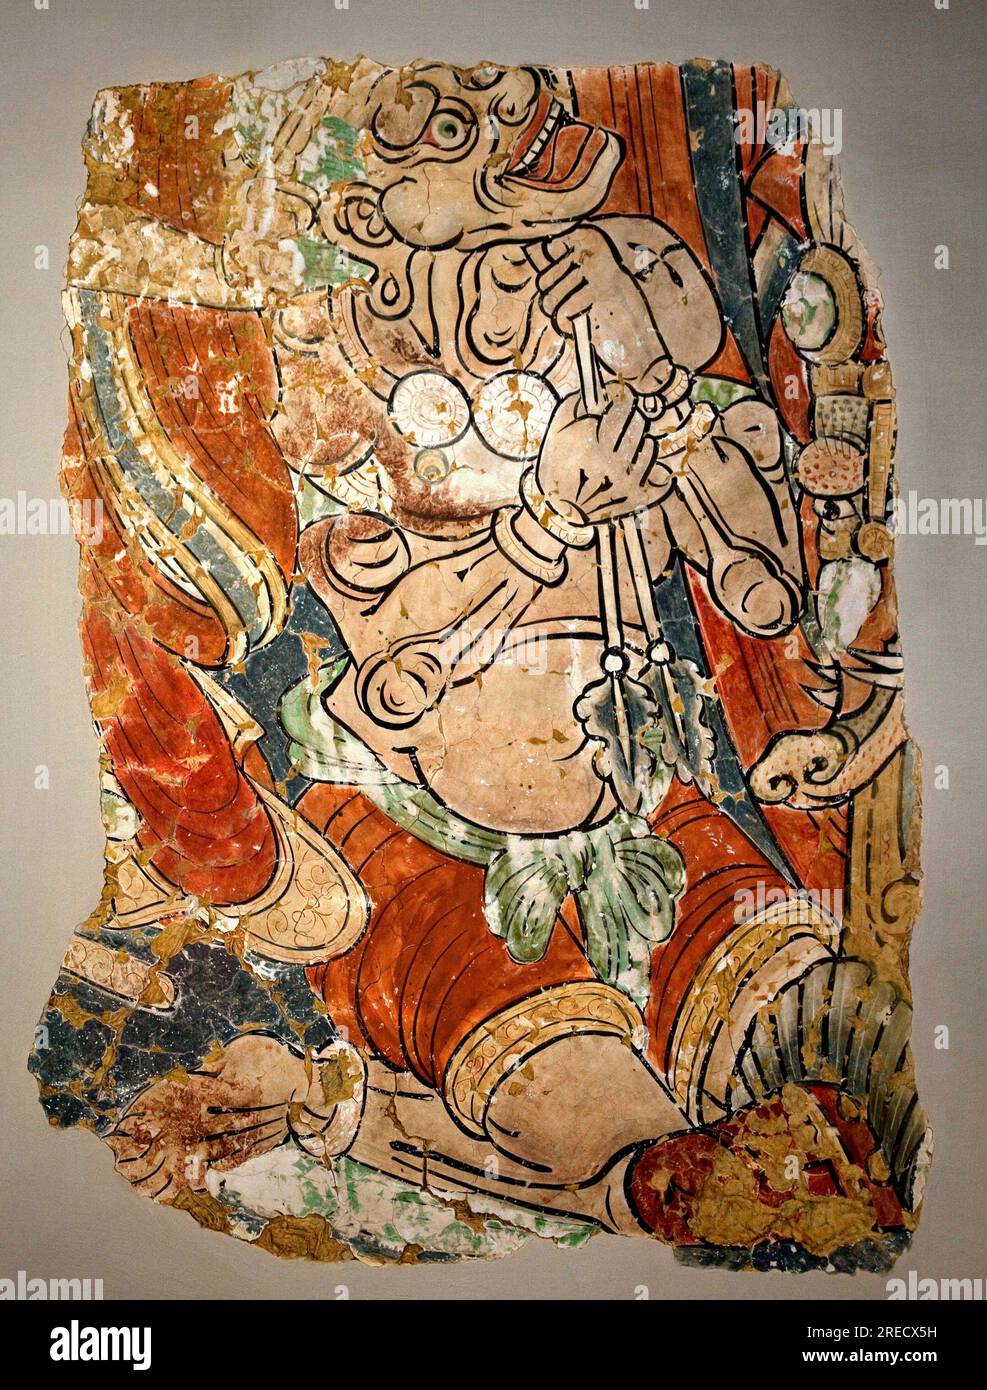 Monstre demoniaque. Replique d'un fragment d'un mur peint de la grotte 15 de Bezeklik, Tourfan (Chine), 10e-12e siecle. Musee National de Coree, Seoul (Coree du Sud). Stock Photo